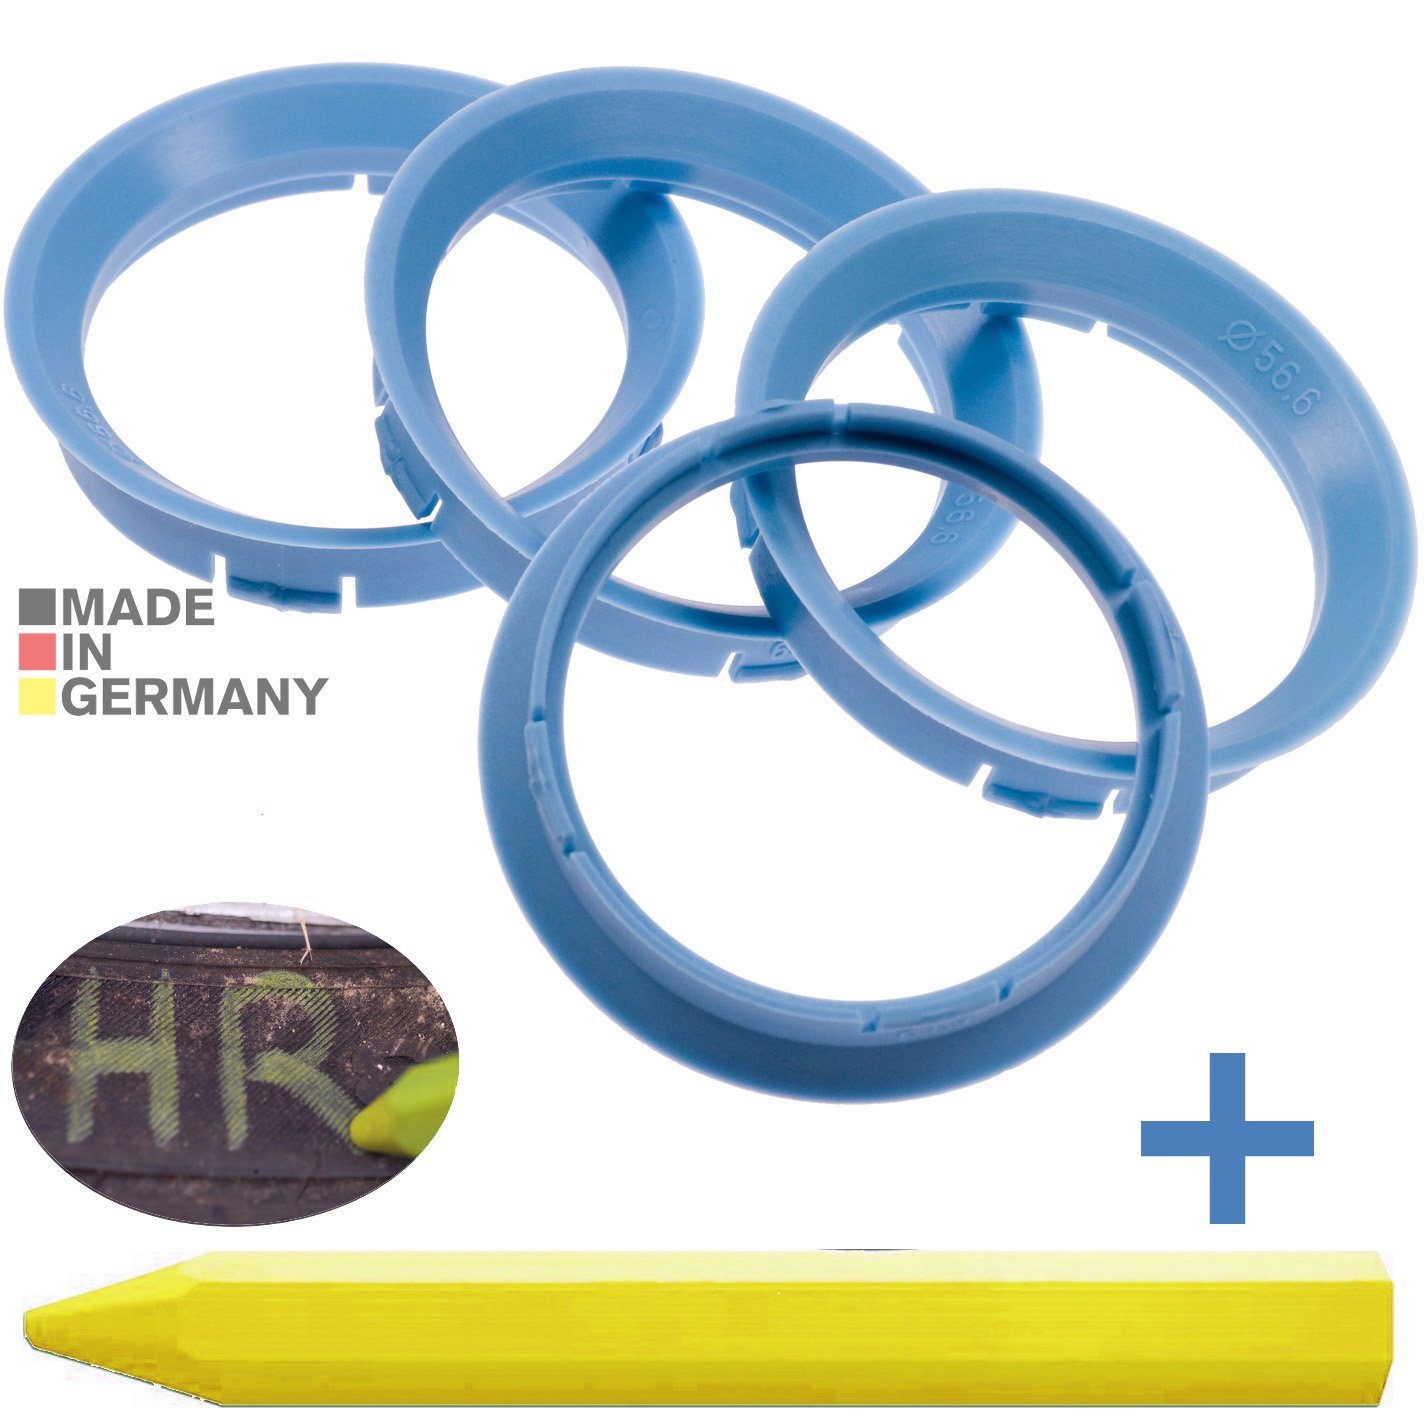 RKC Reifenstift 4X Zentrierringe Hellblau Felgen Ringe + 1x Reifen Kreide Fett Stift, Maße: 63,3 x 56,6 mm